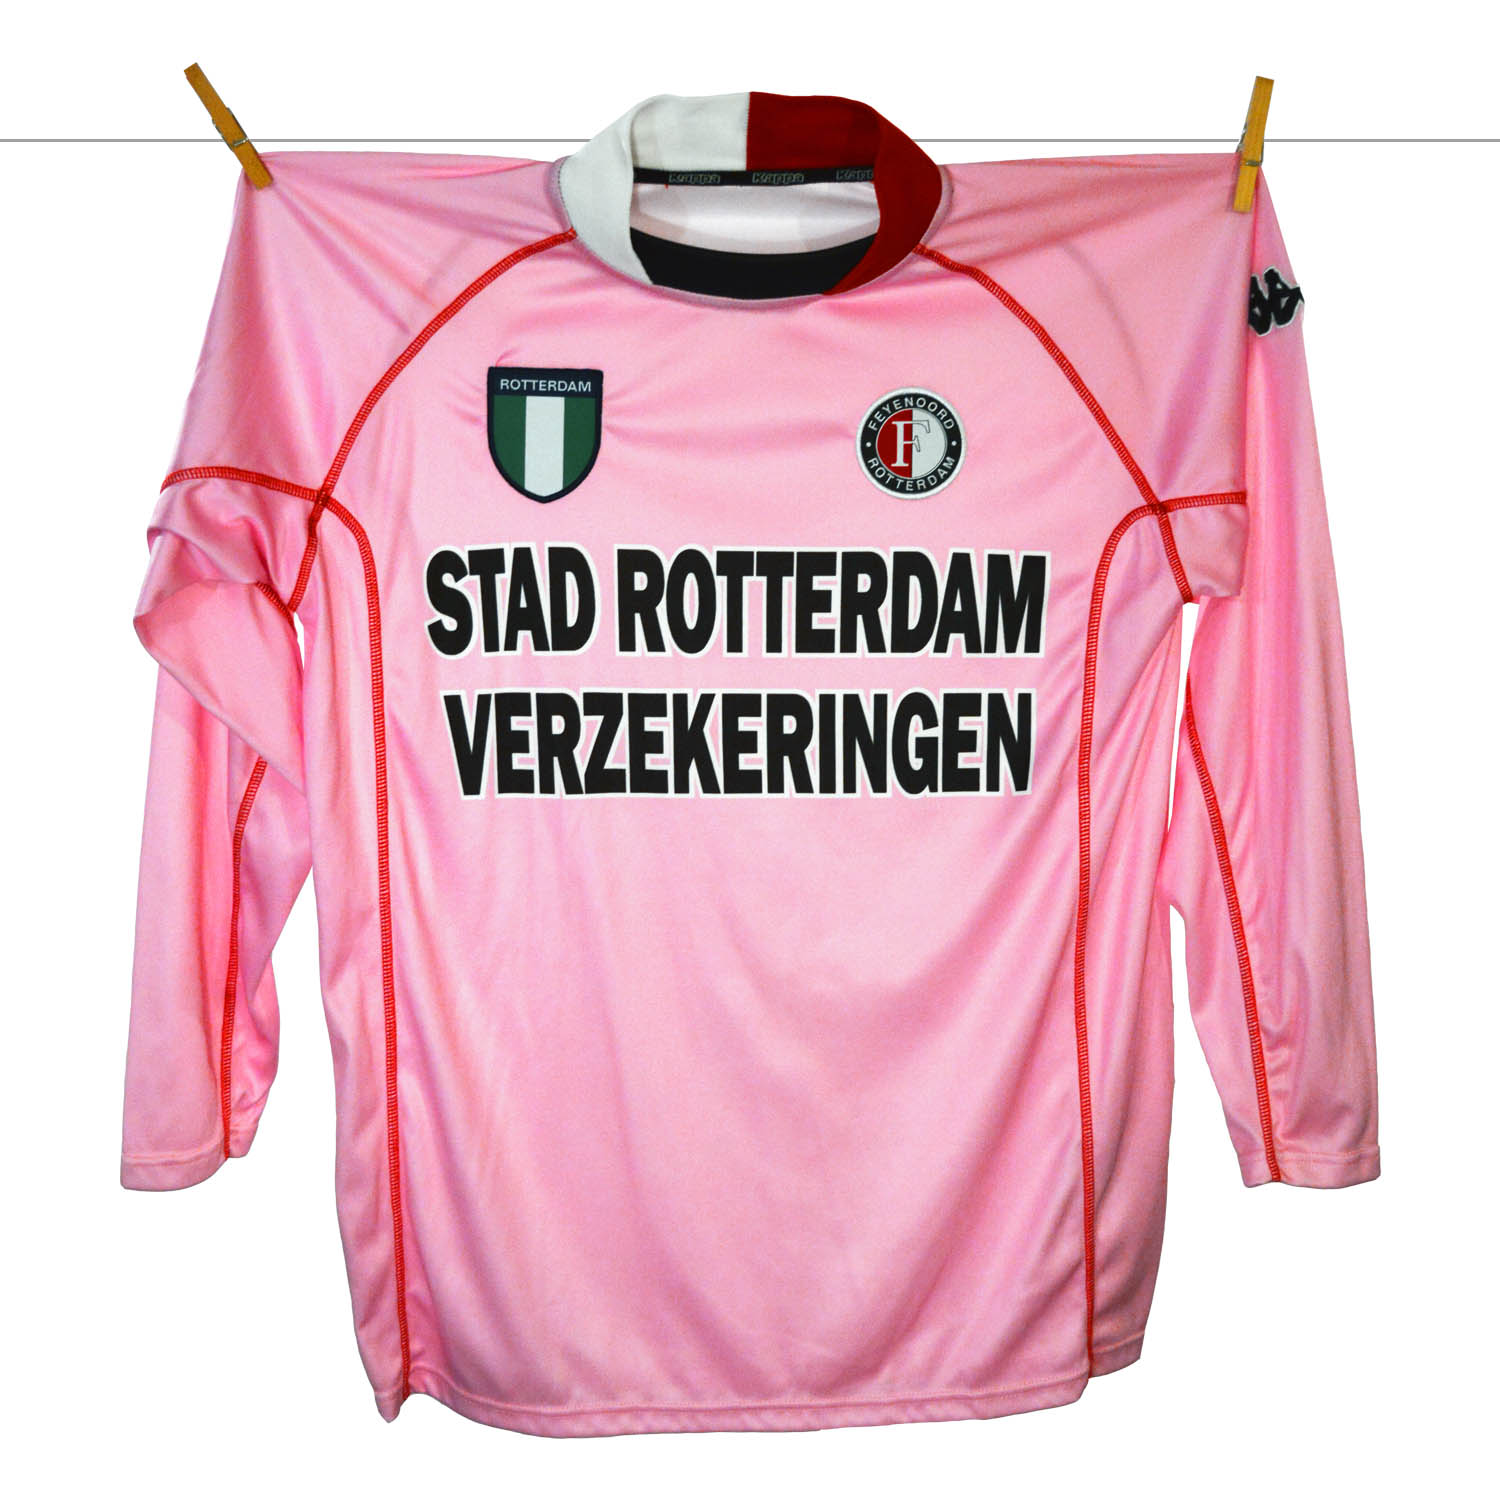 uitspraak ik ben ziek Kilometers Feyenoord ziet af van roze shirt – The Feyenoord Matchworn Shirt Collection